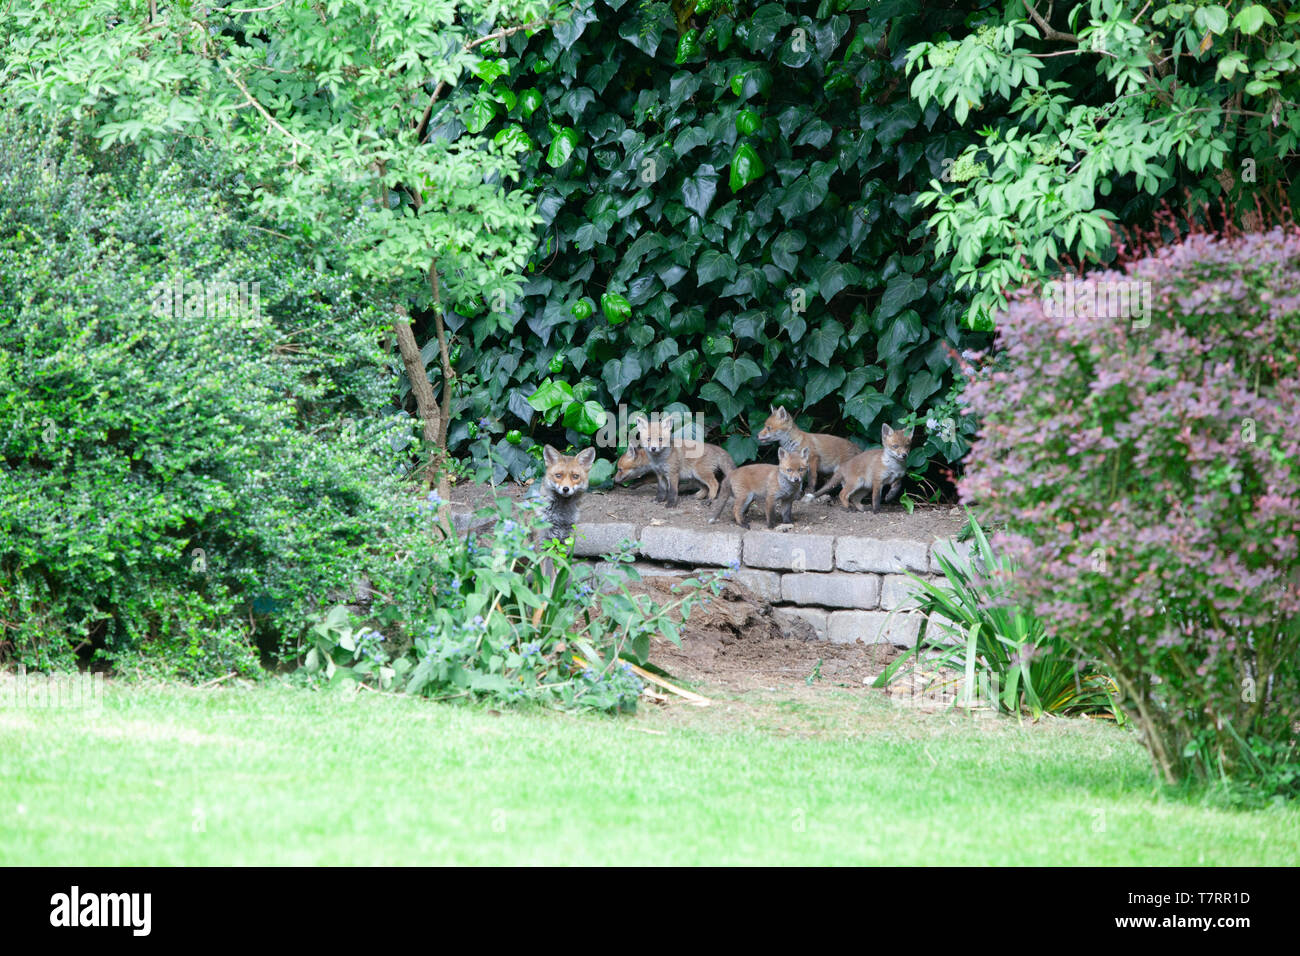 Eine weibliche Fox (Vixen) mit ihren Jungen in einem Vorort Garten im Süden Londons. Es gibt sieben Jungen in der Wurf. Stockfoto